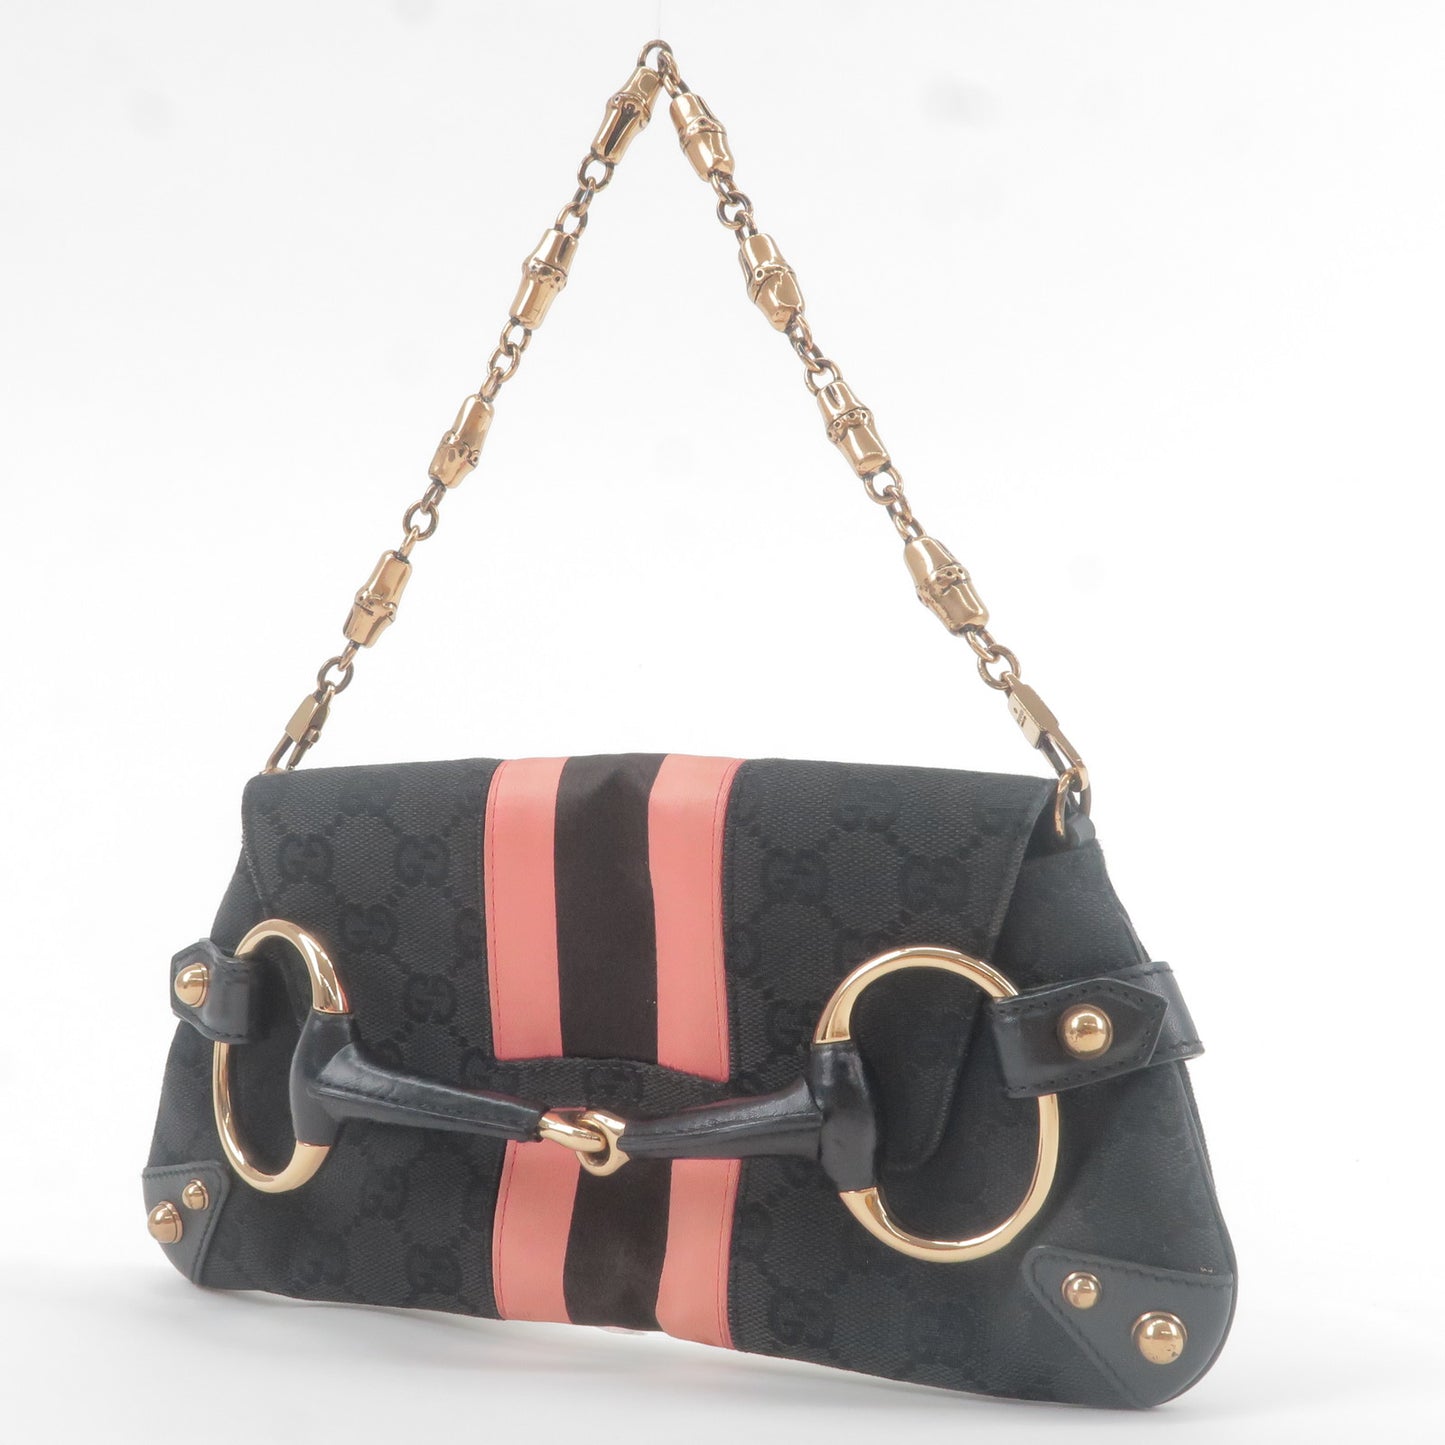 GUCCI Horsebit GG Canvas Leather Shoulder Bag Black Pink 129497